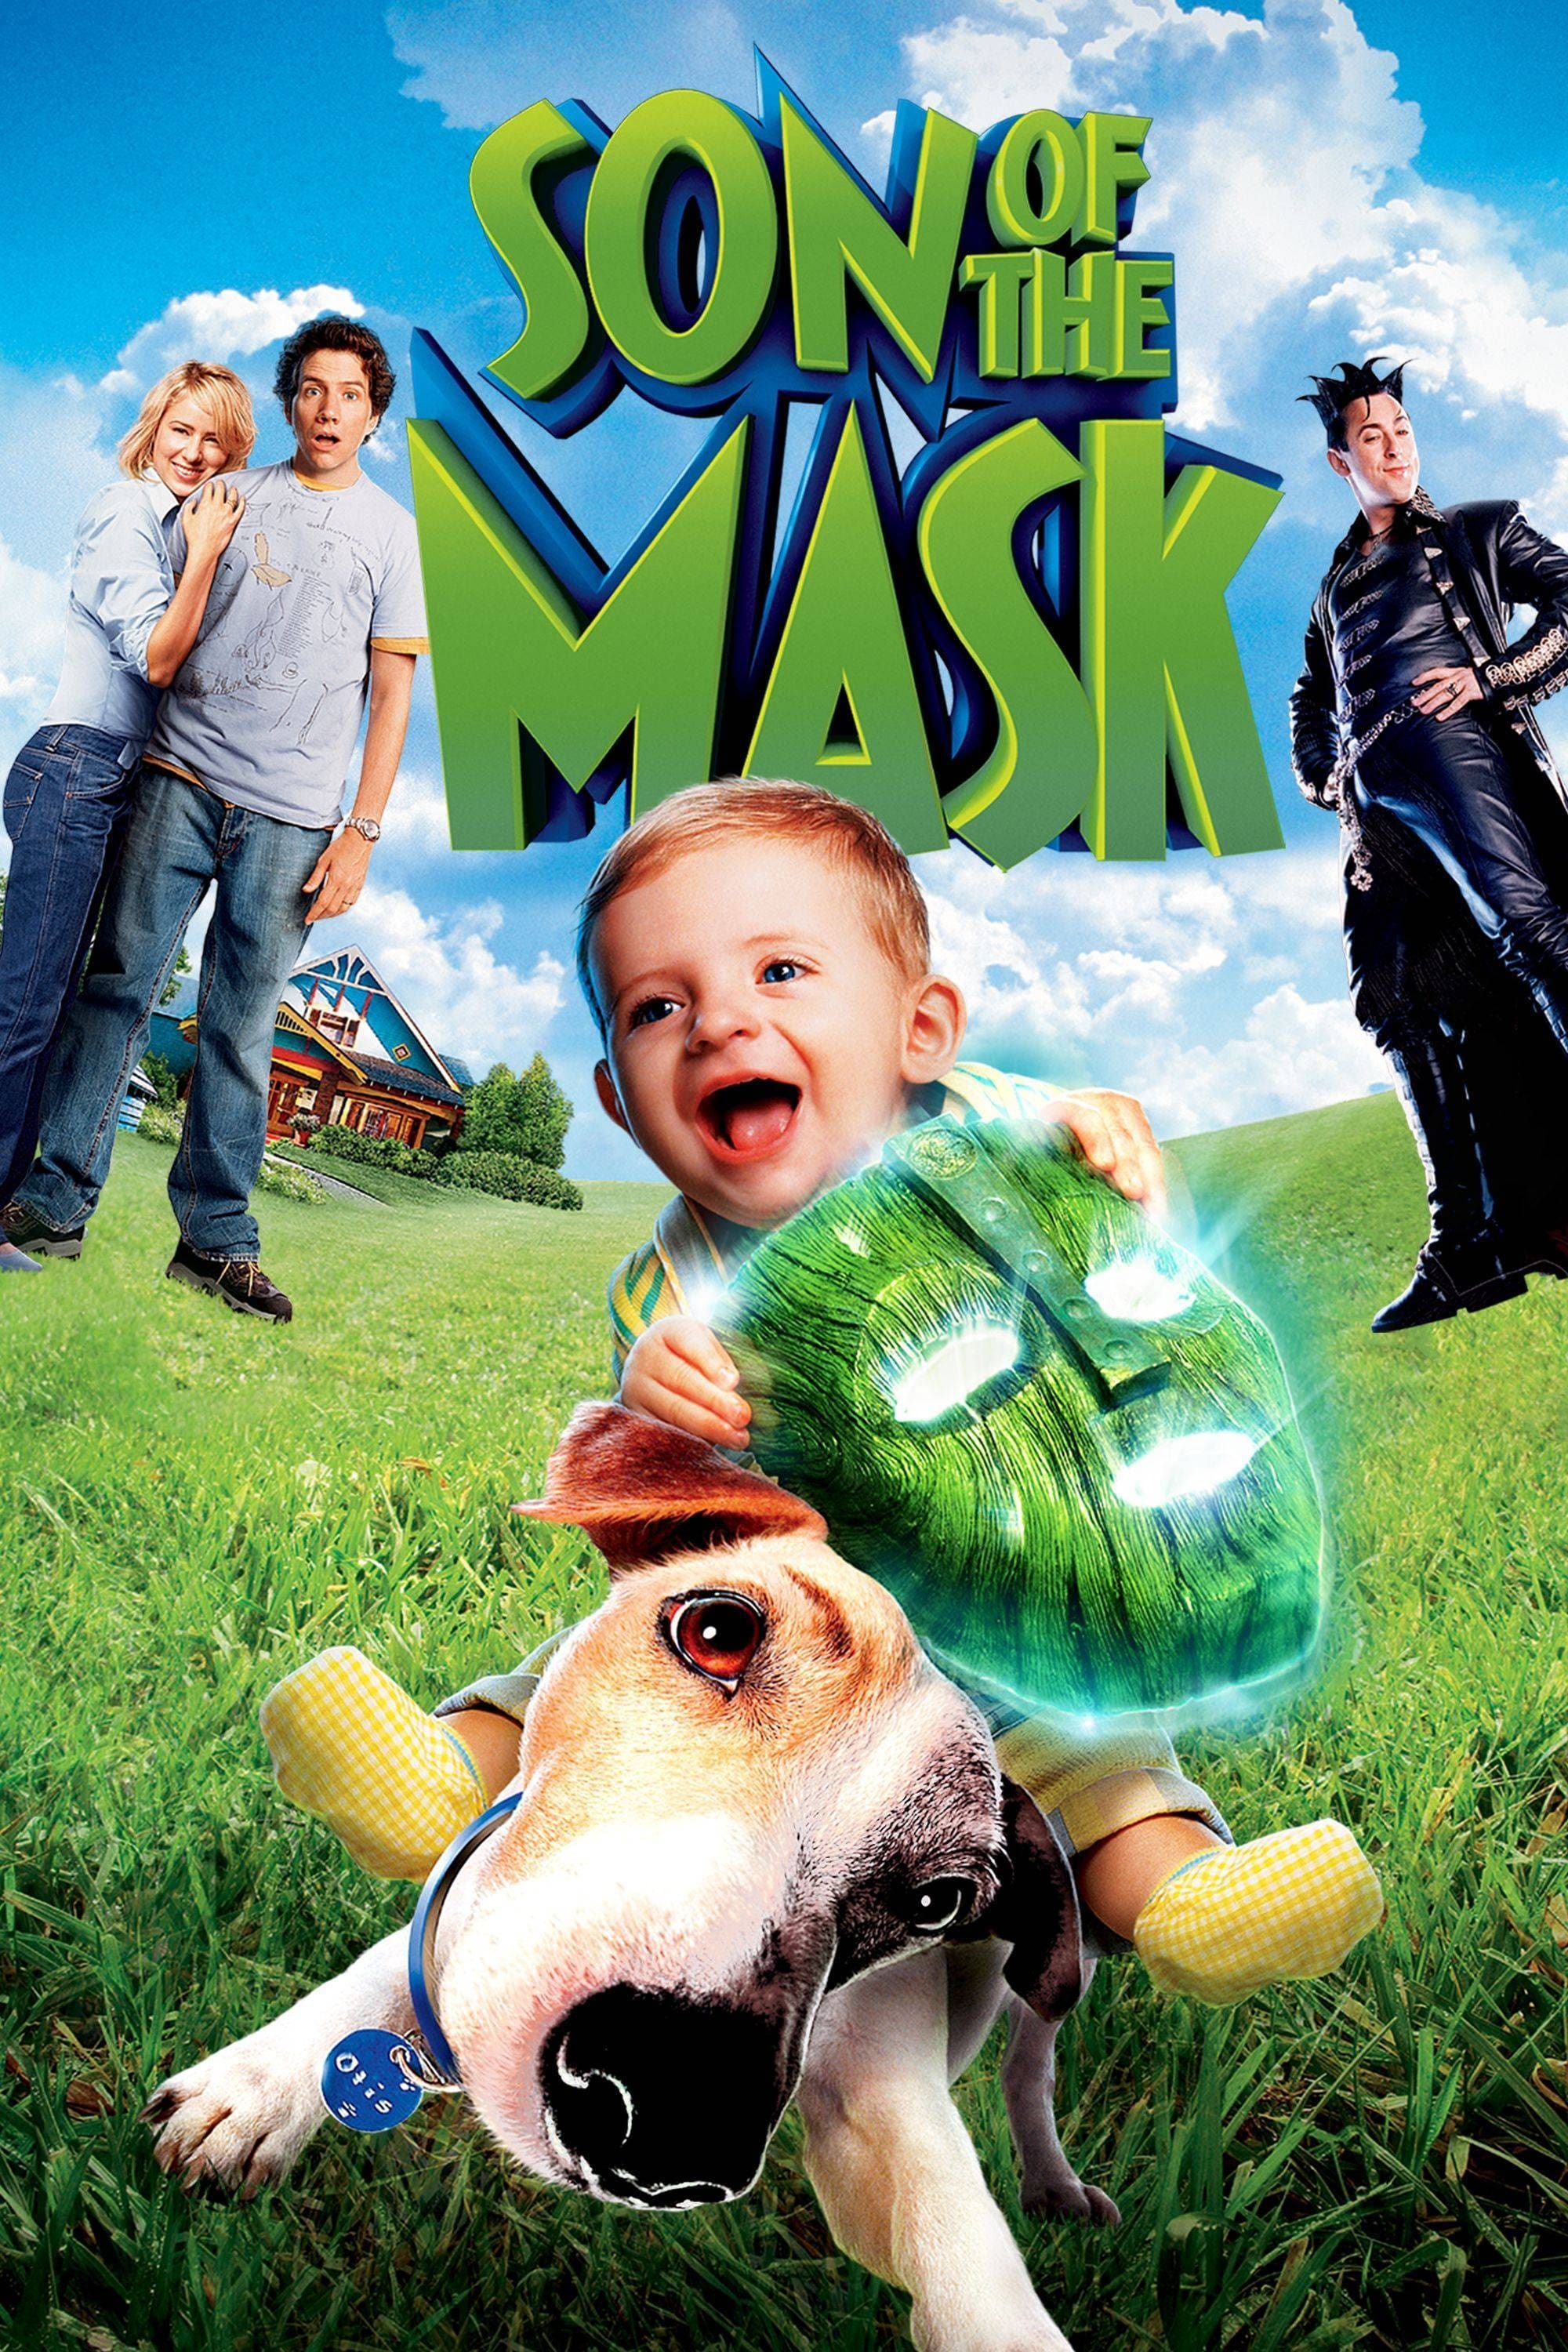 Mặt Nạ Xanh Nhí (Son of the Mask) [2005]